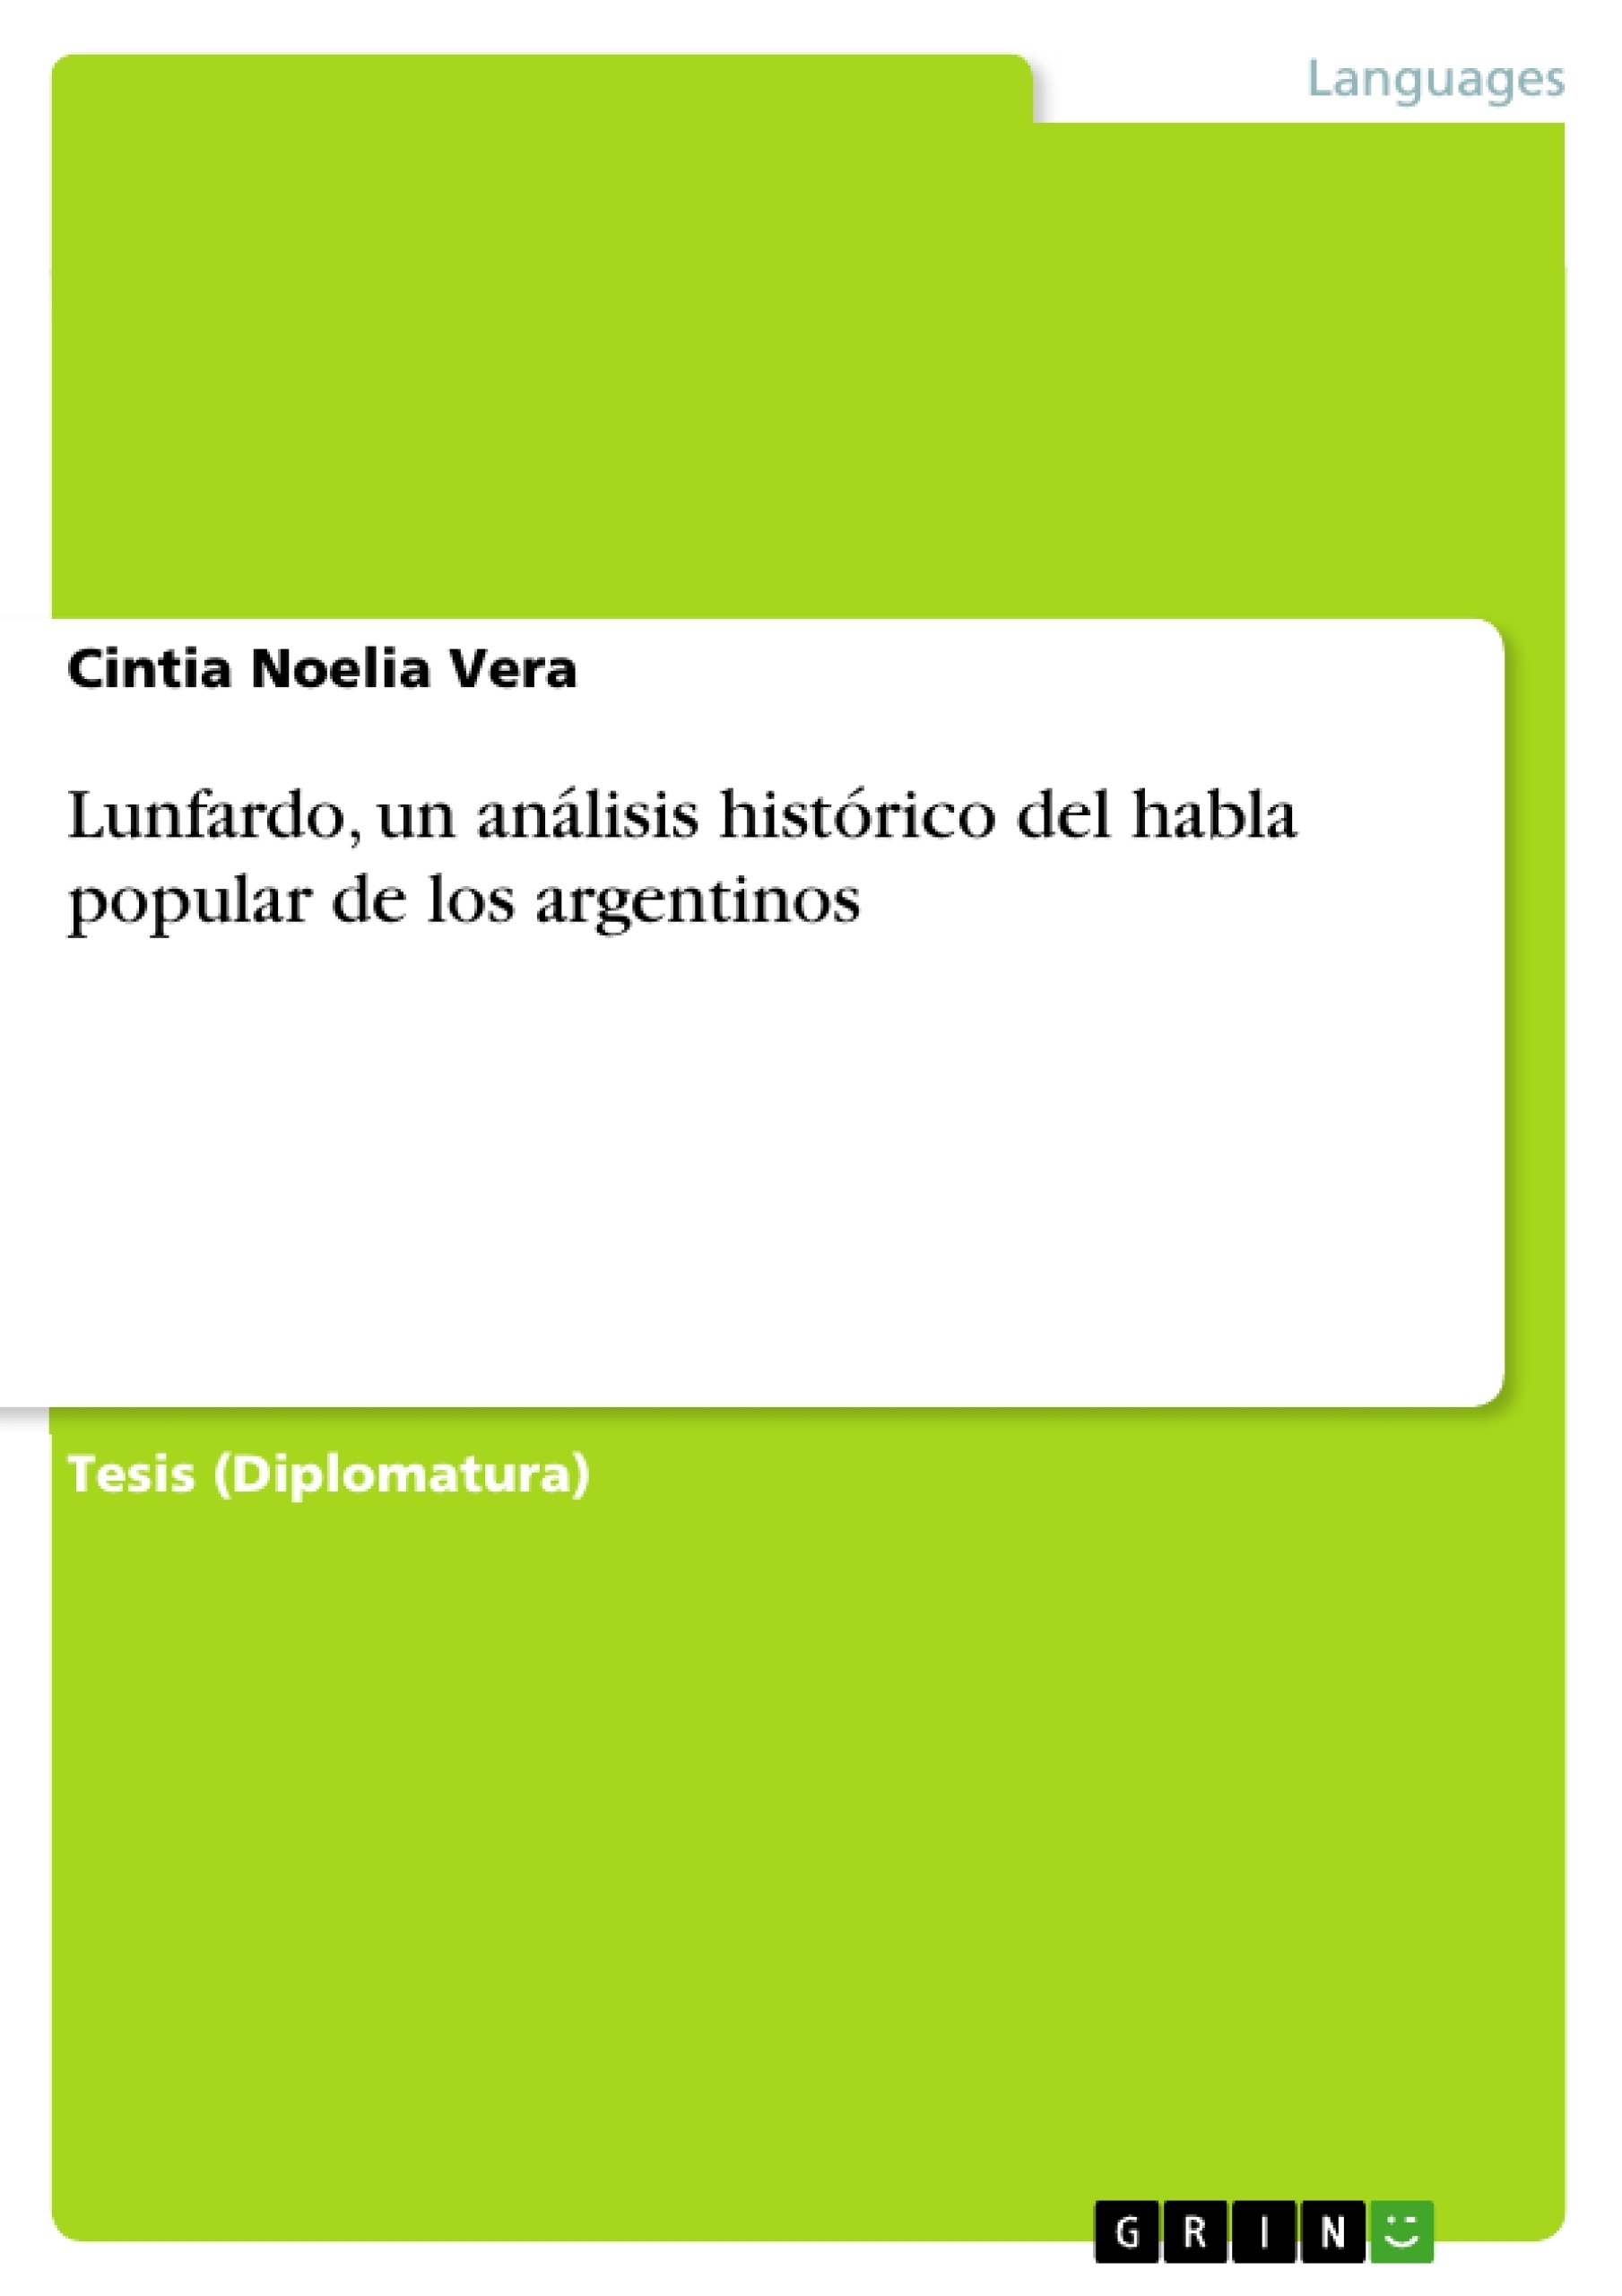 Title: Lunfardo, un análisis histórico del habla popular de los argentinos